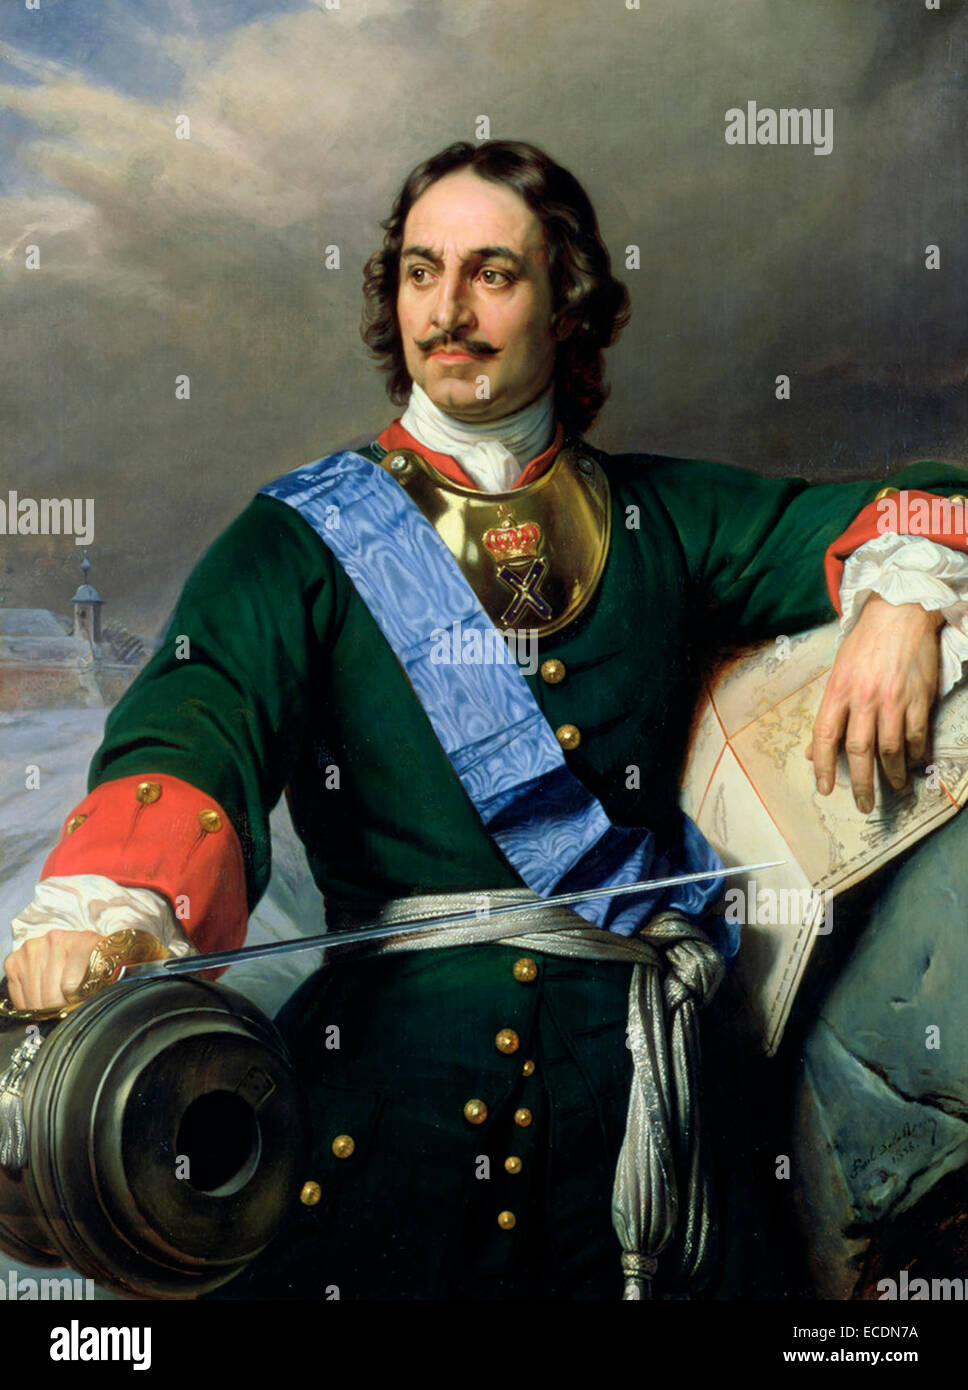 Pierre le Grand, le premier empereur de Russie Paul Delaroche peint en 1838 Banque D'Images